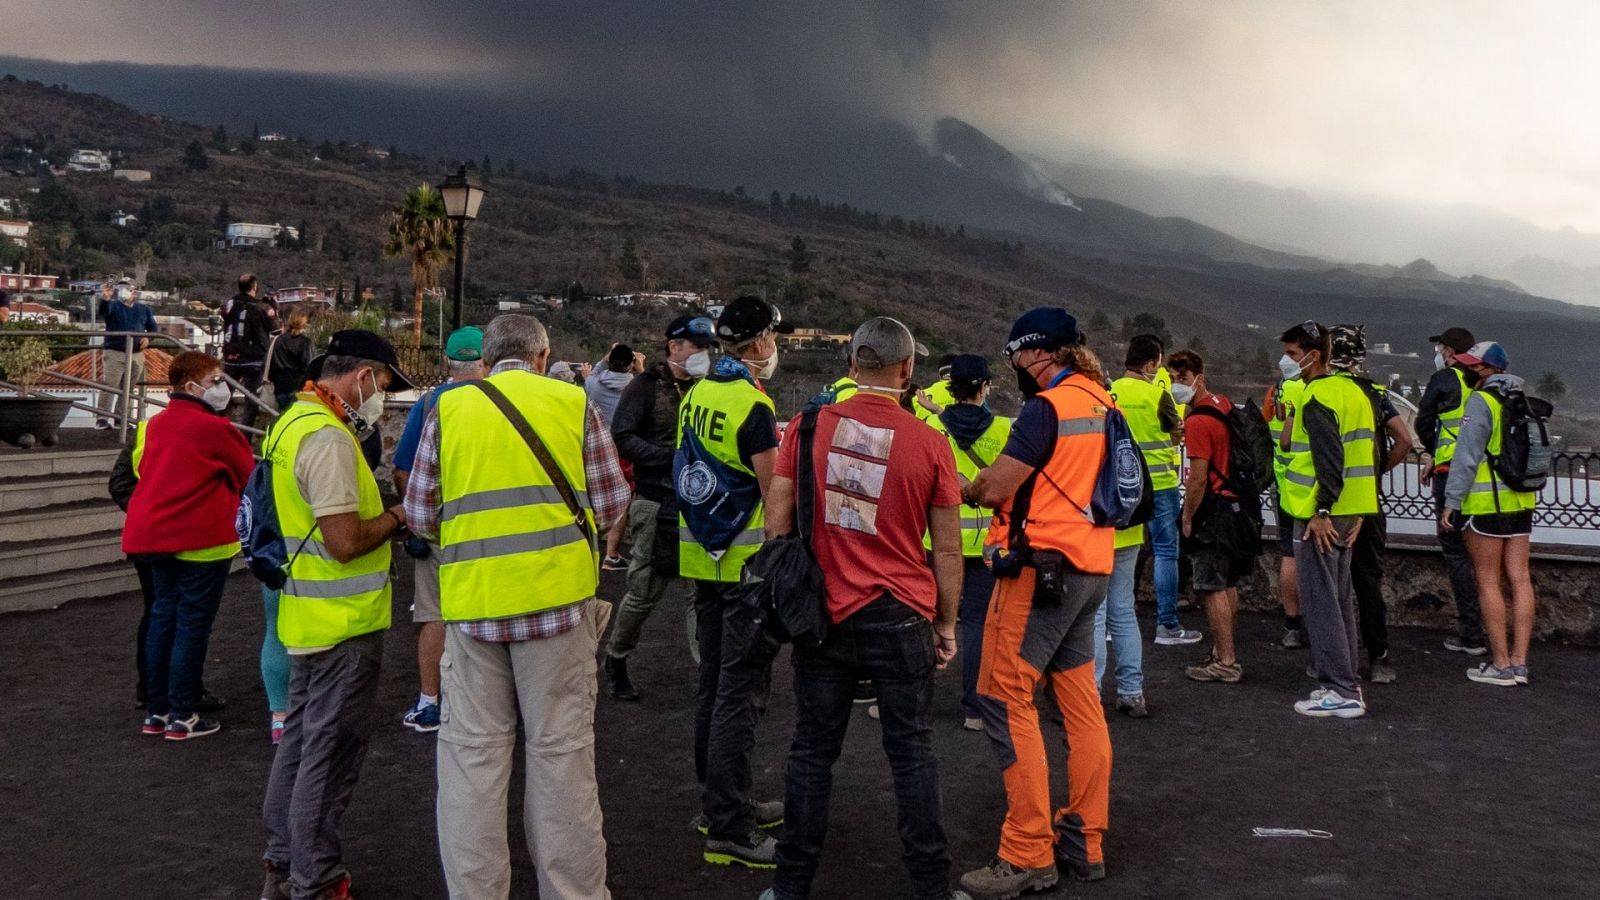 Los turistas llegan a La Palma para ver el volcán